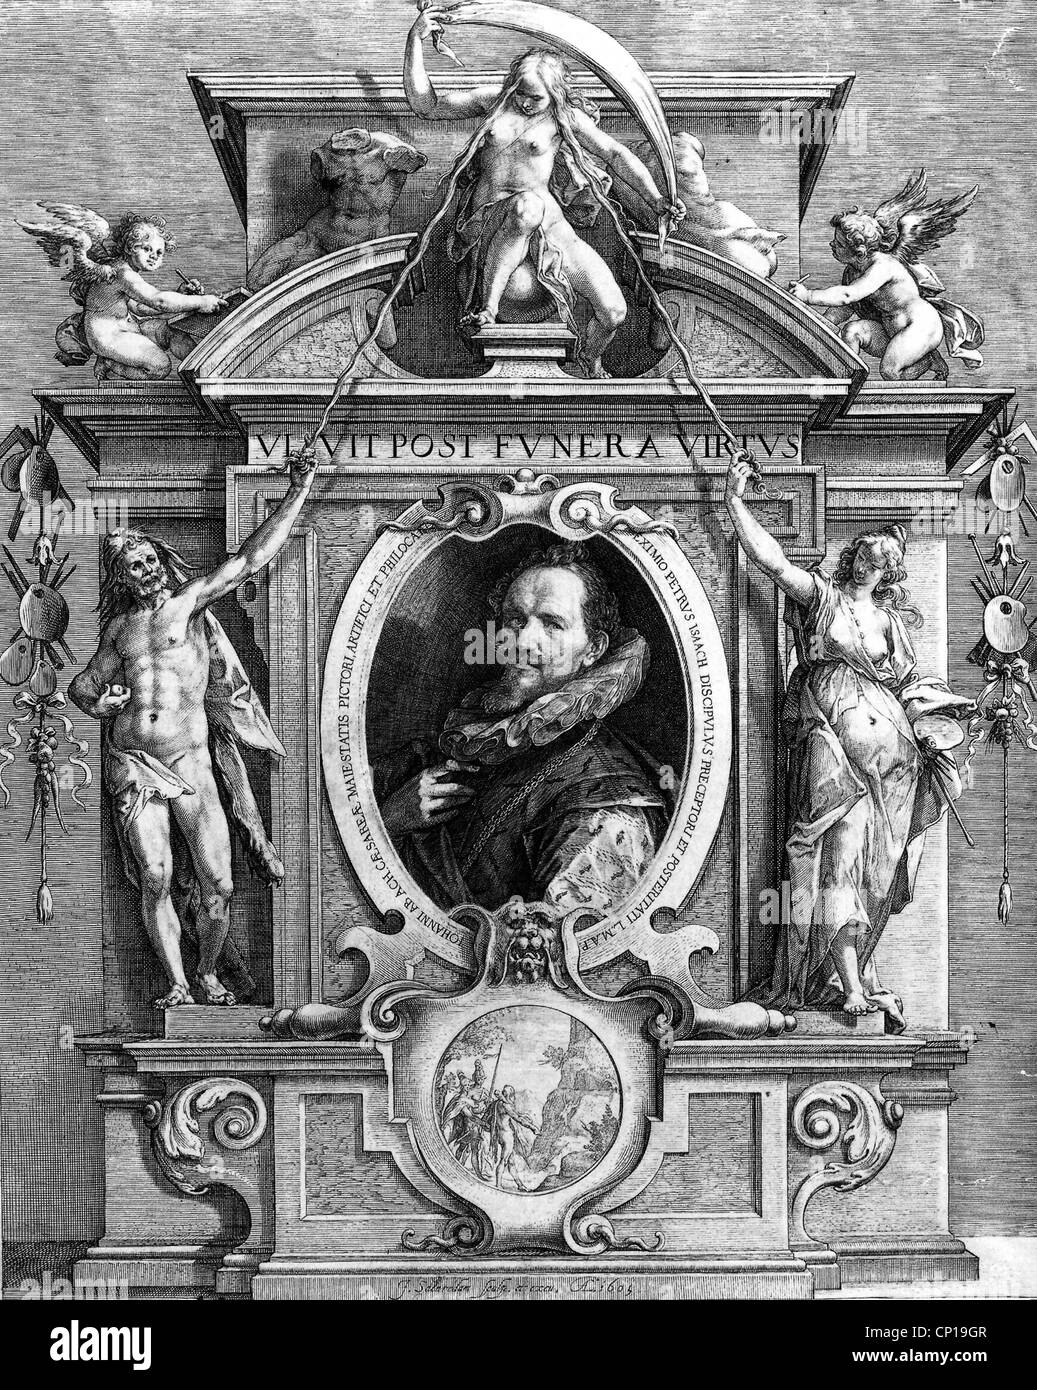 Bildende Kunst, Saenredam, Kupfer Jan ca. 1565-1607, Porträt von Hans von Aachen, Gravur, 1605, Allegorie, Allegorien, Rahmen, Stockfoto